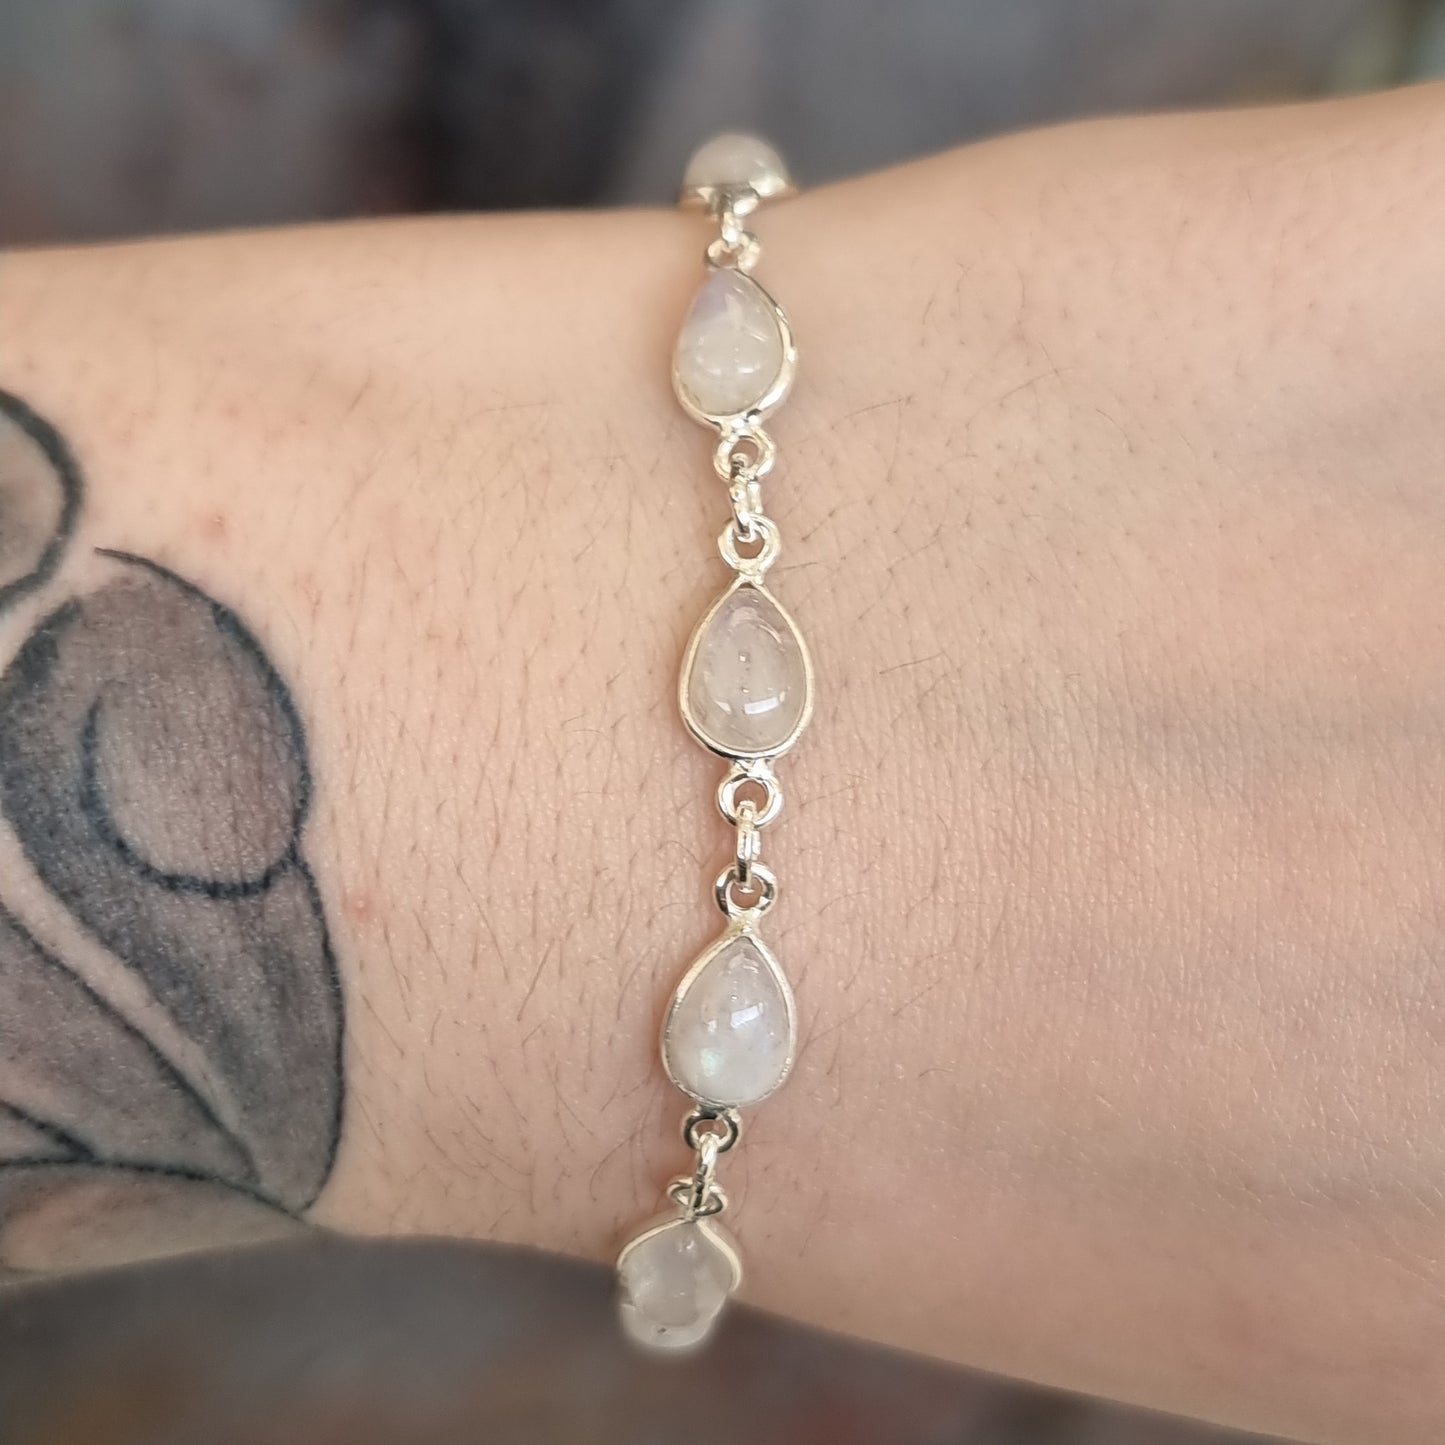 Moonstone bracelet - Rivendell Shop